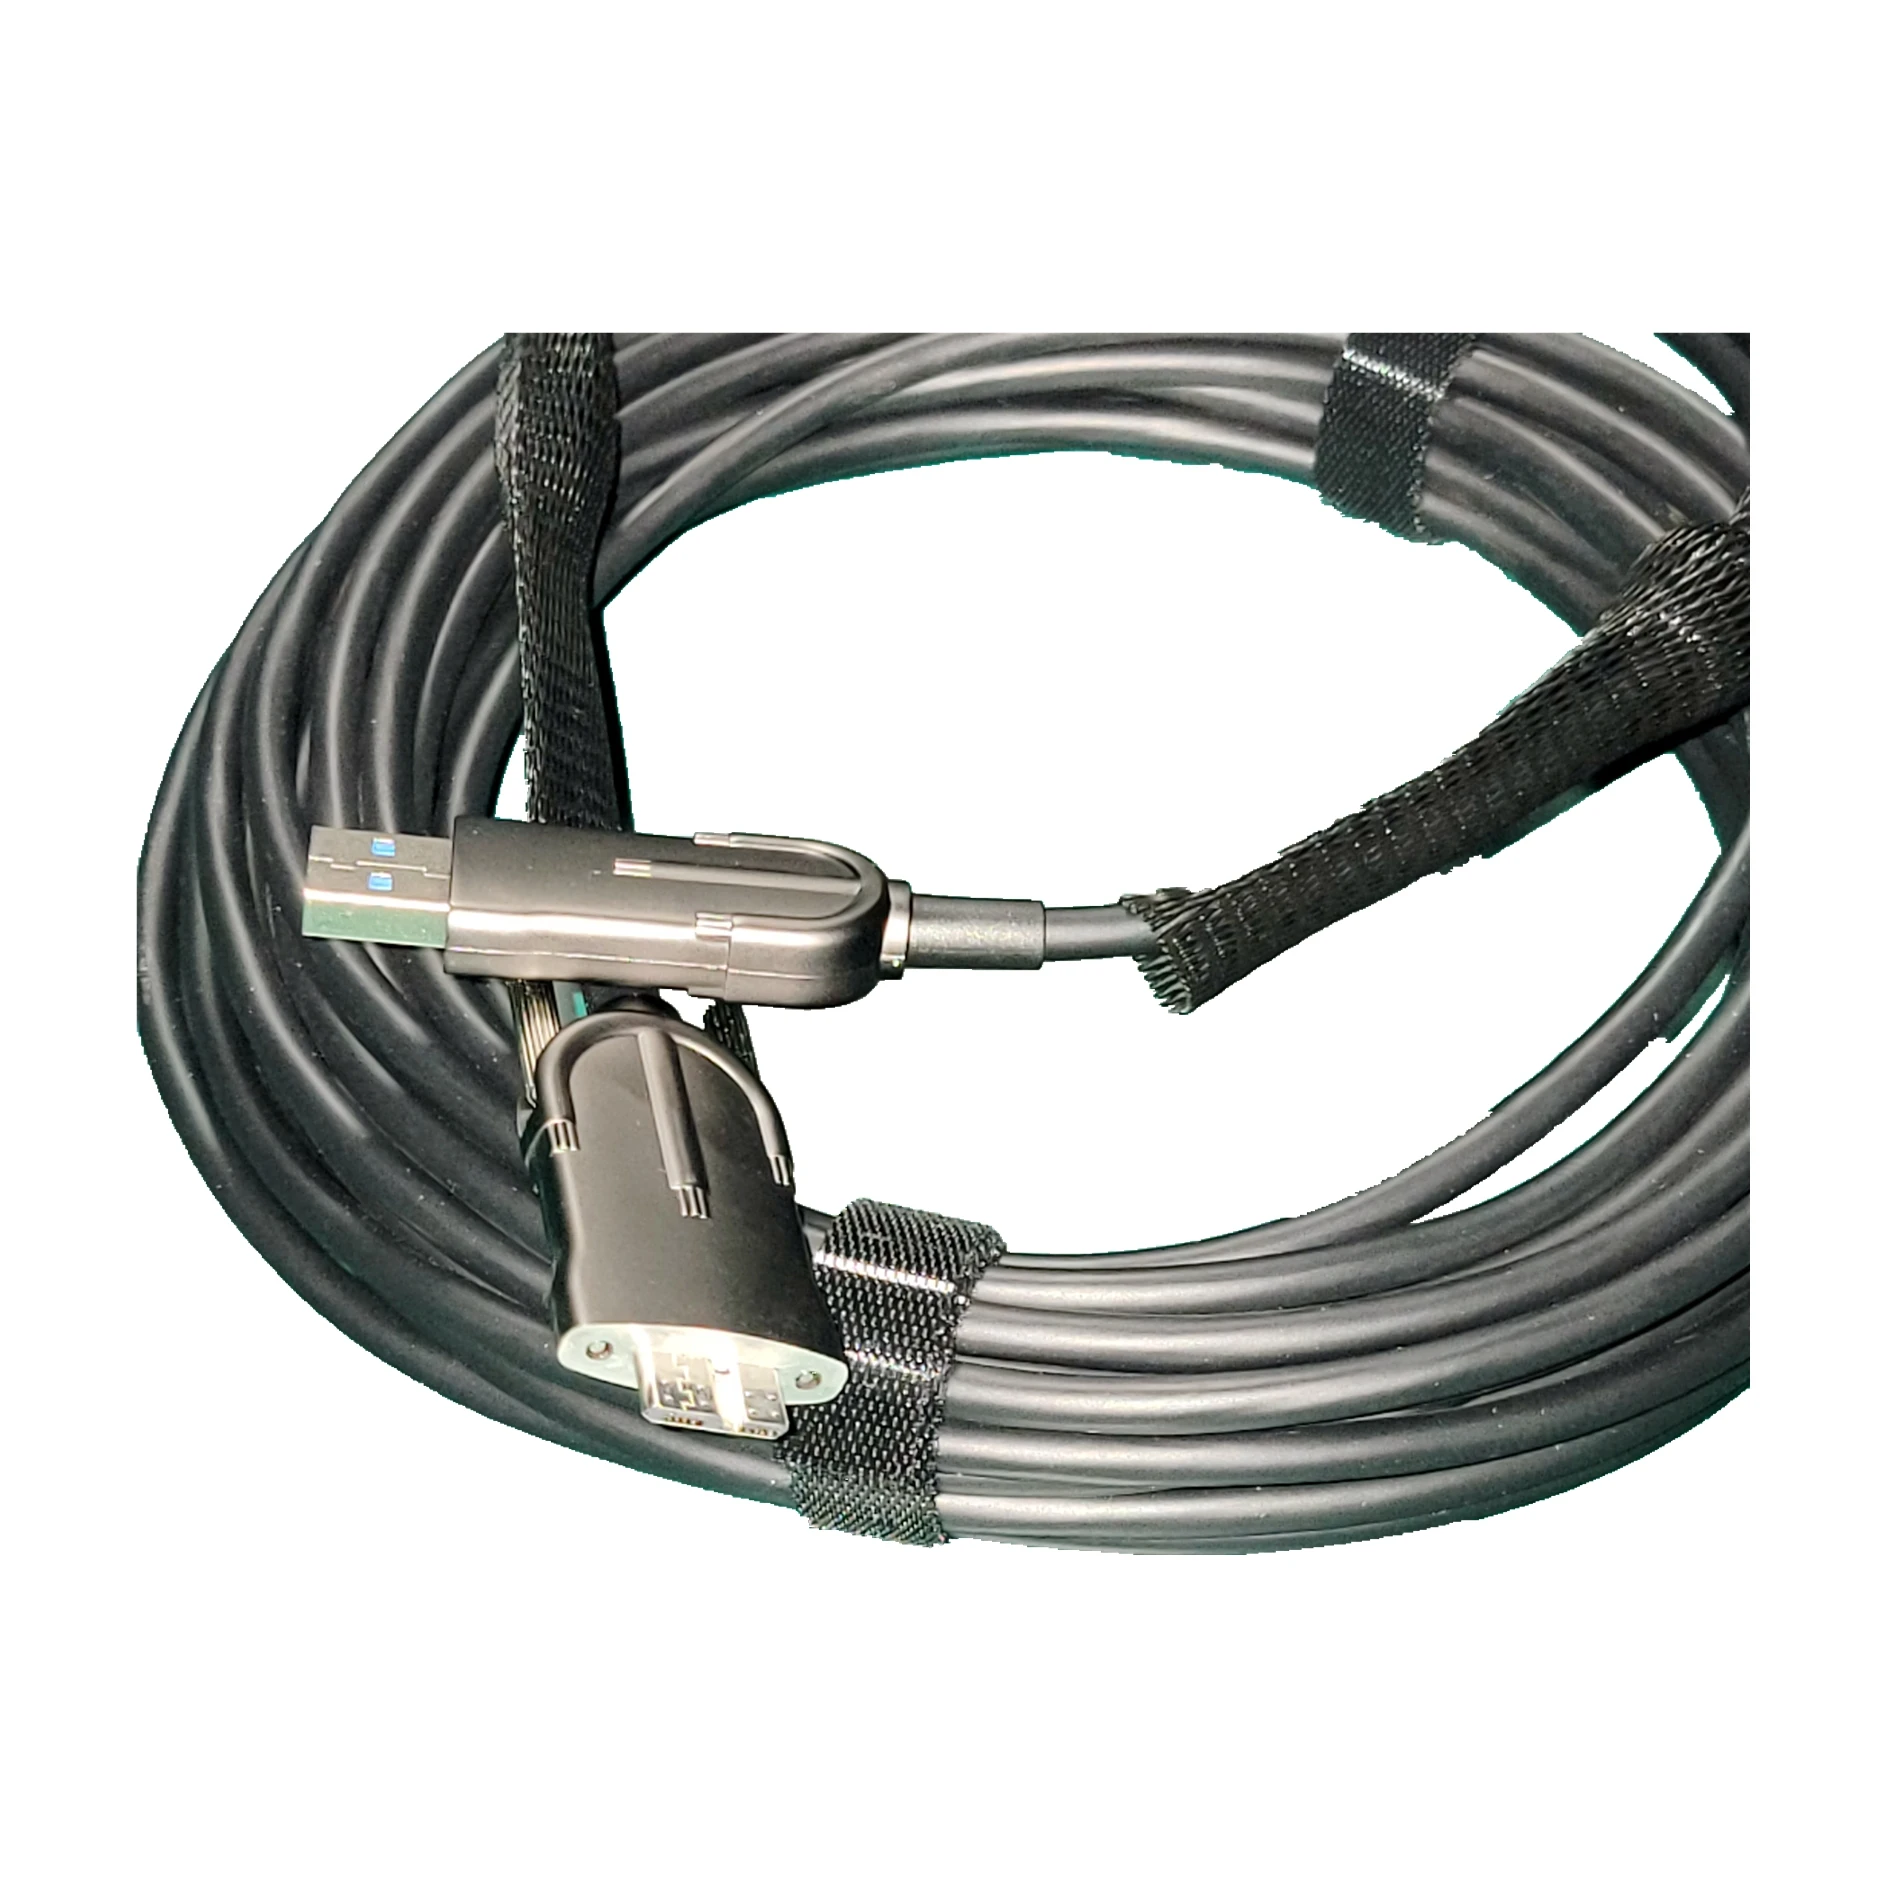 Оптоволоконная линия USB3.0 to Microb промышленная камера, высокогибкая линия сопротивления с замком, фиксированная скорость передачи 5 Гбит/с Изображение 2 